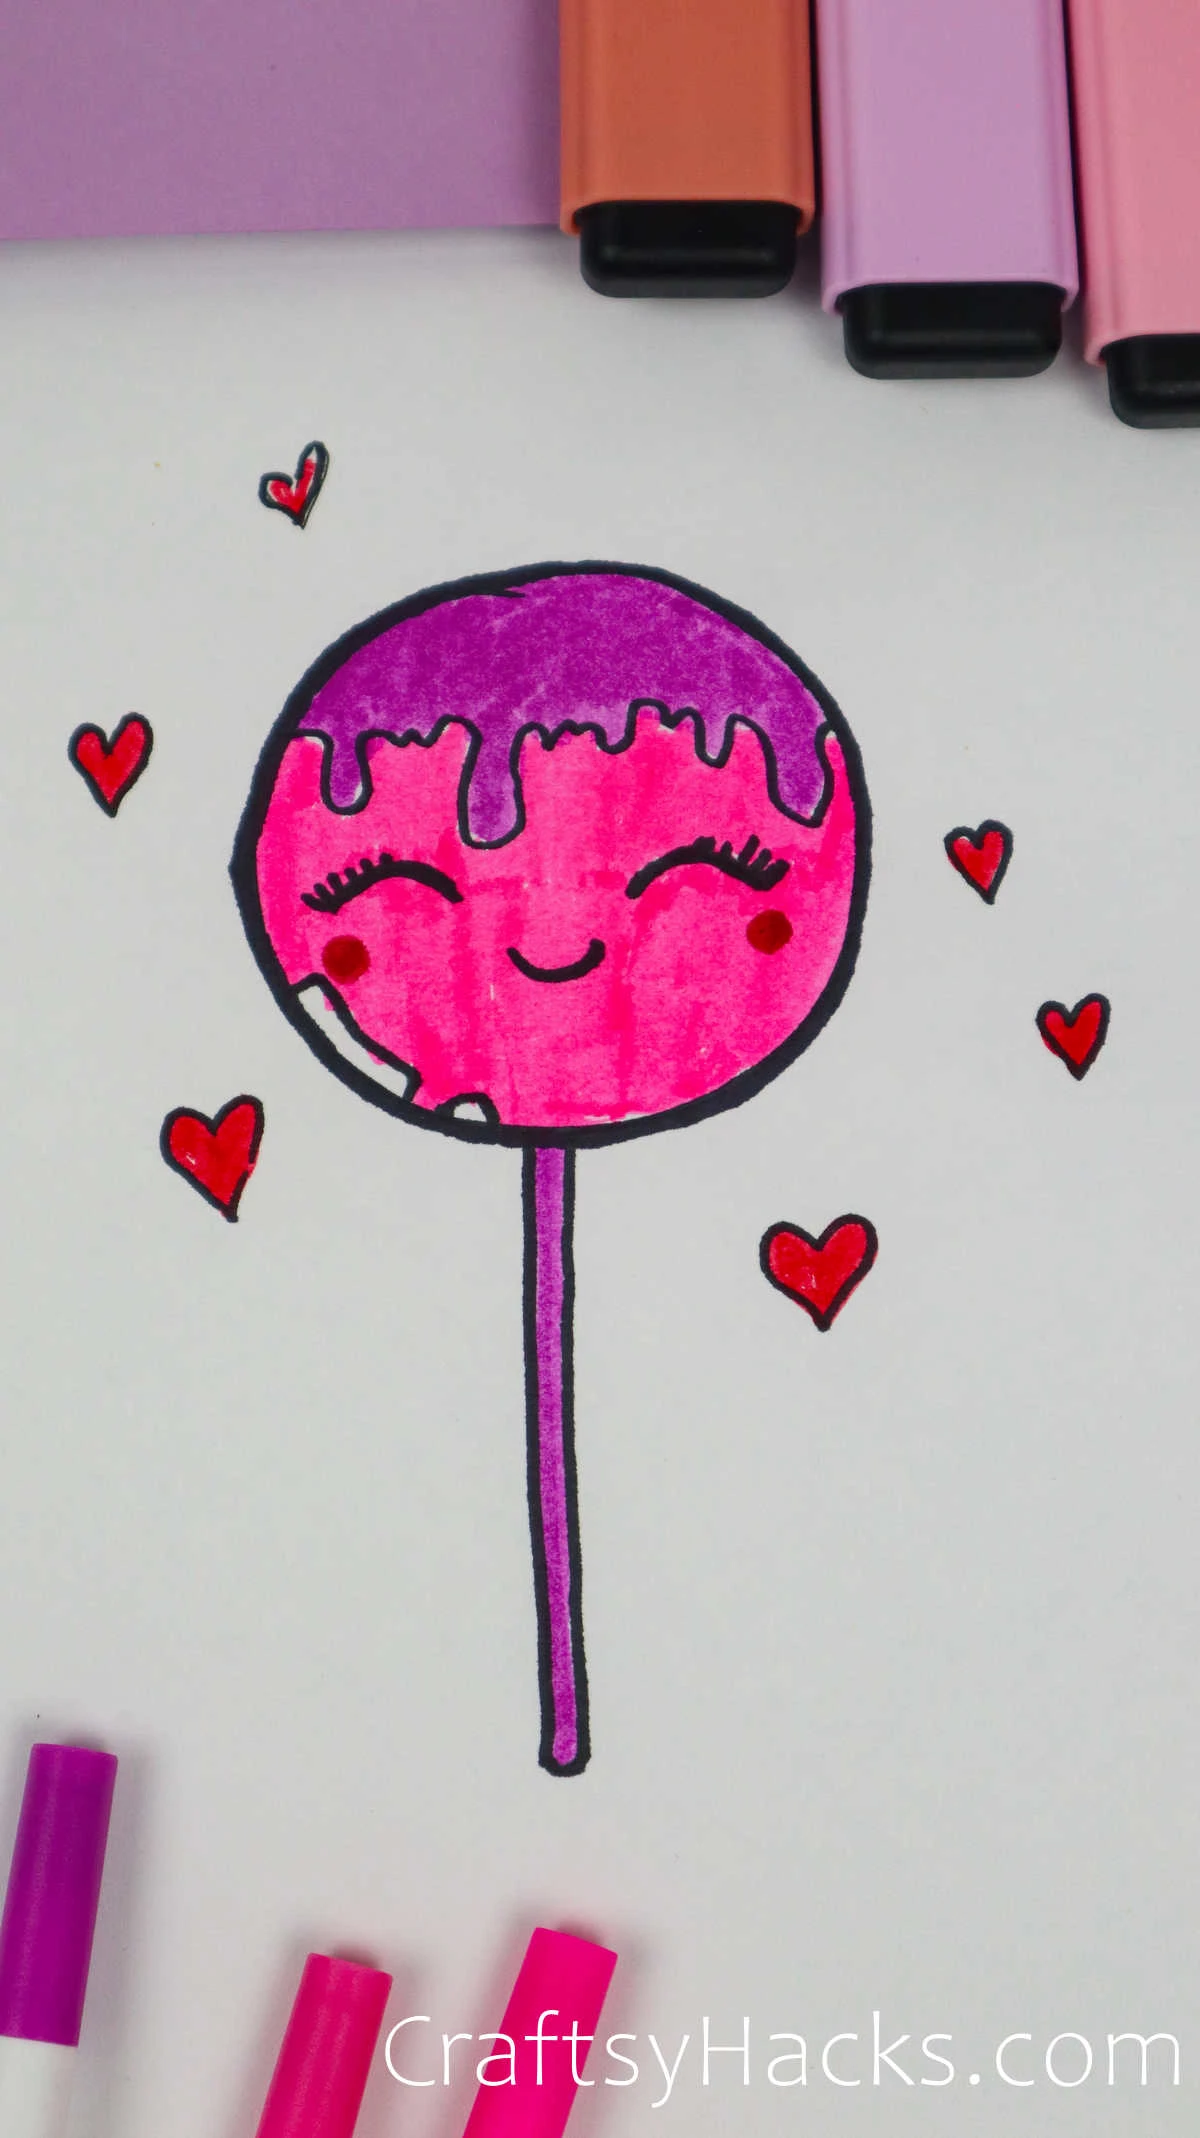 lollipop doodle